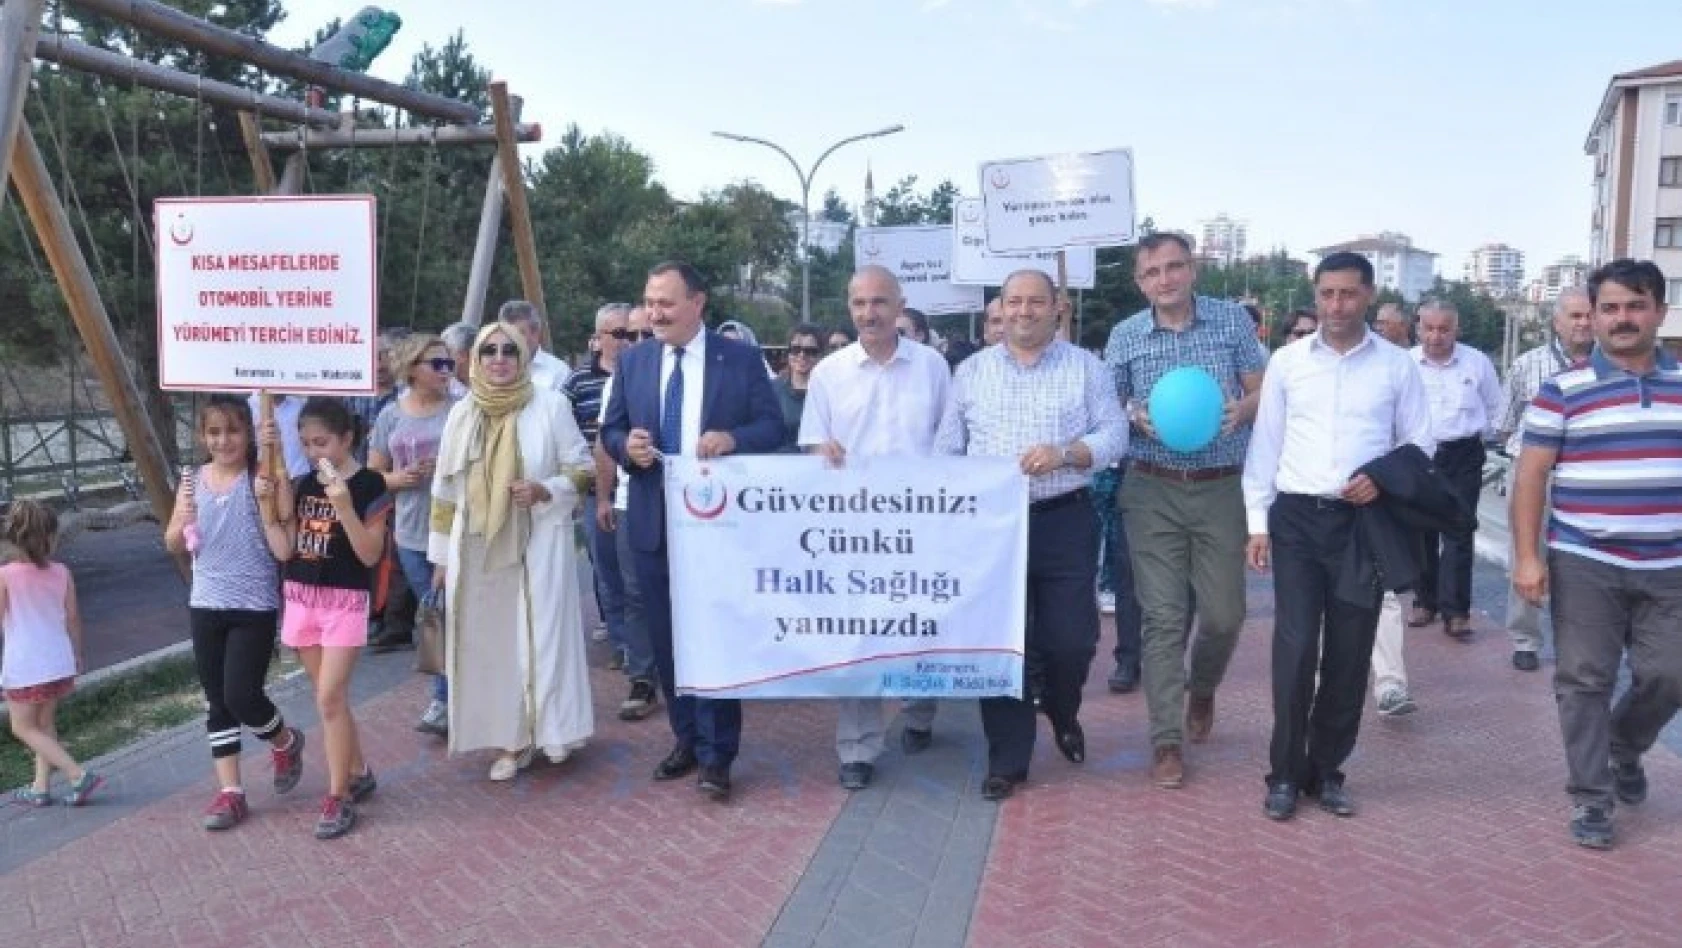 Kastamonu'da Sağlıklı Yaşam Yürüyüşü gerçekleştirildi